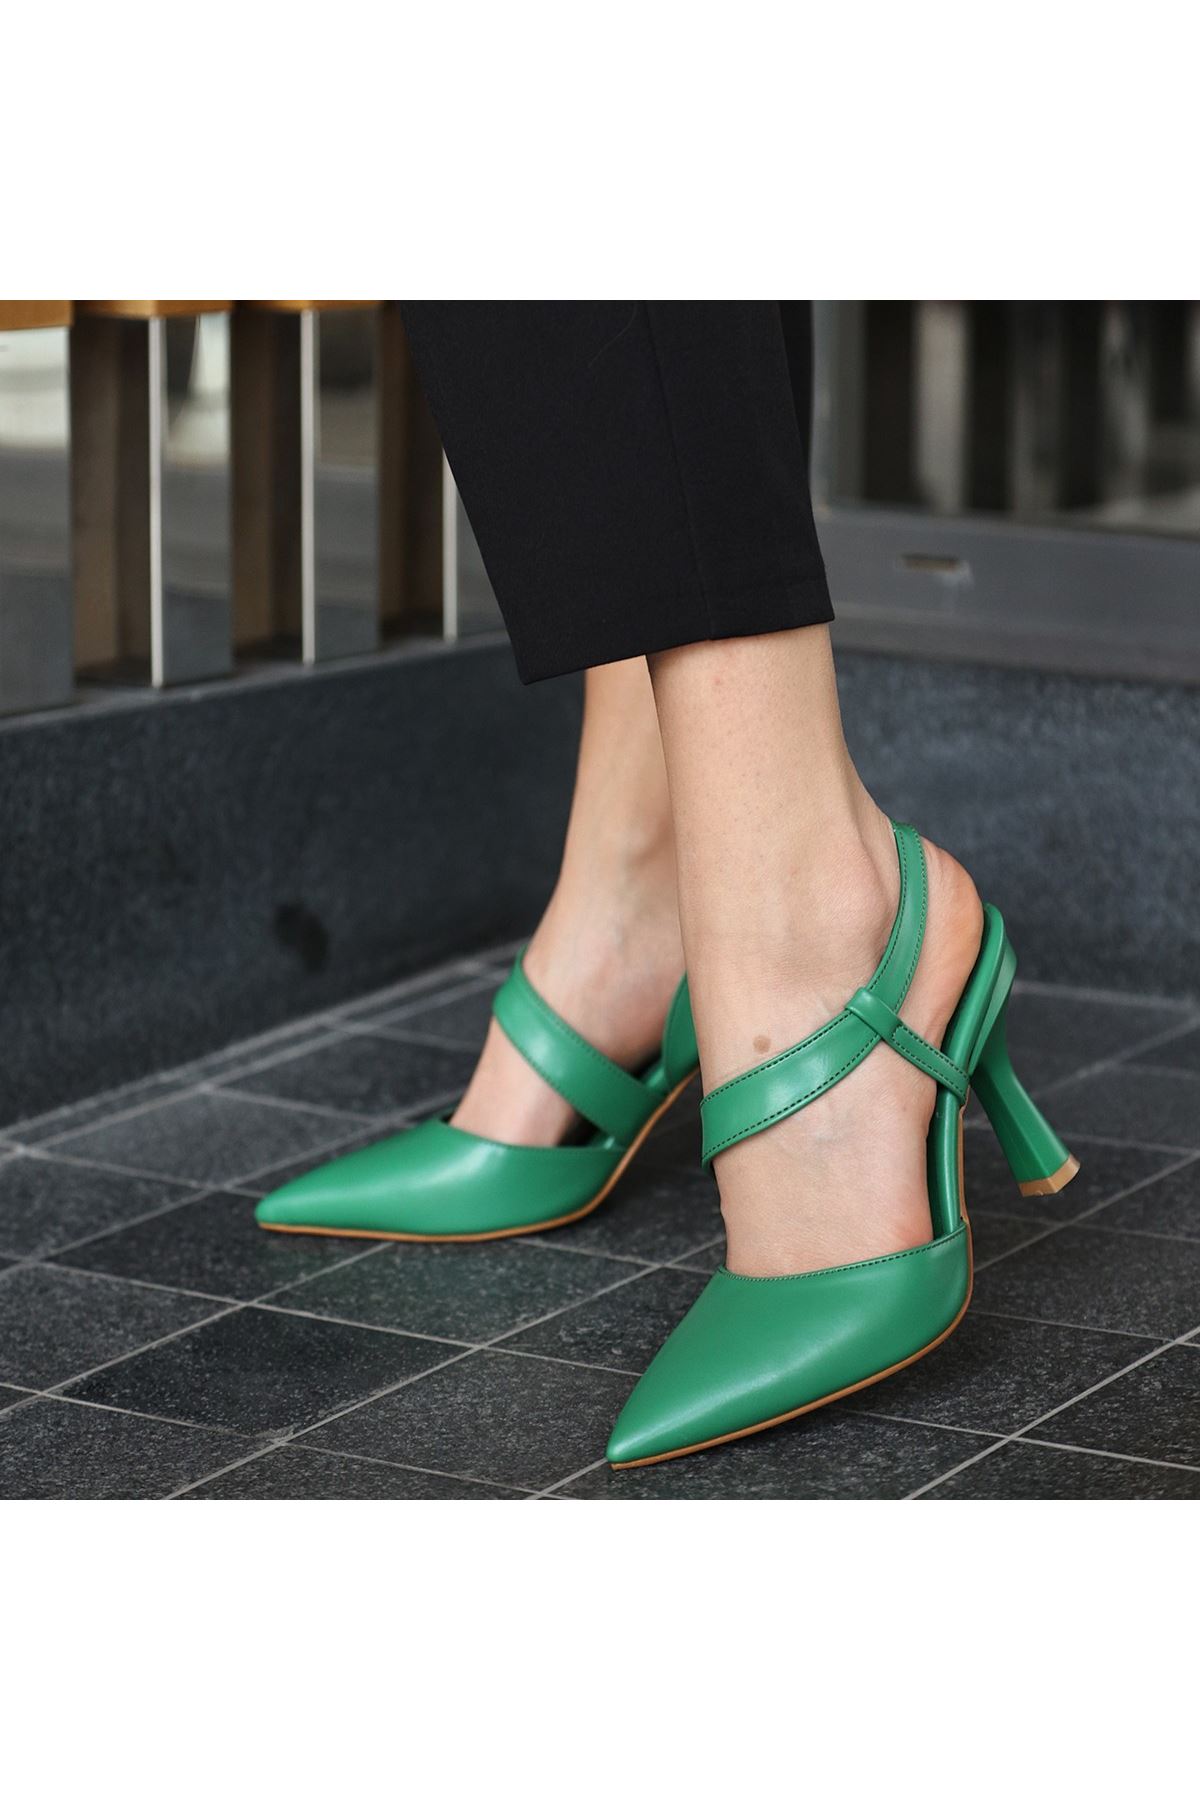 Rogi Yeşil Cilt Topuklu Ayakkabı